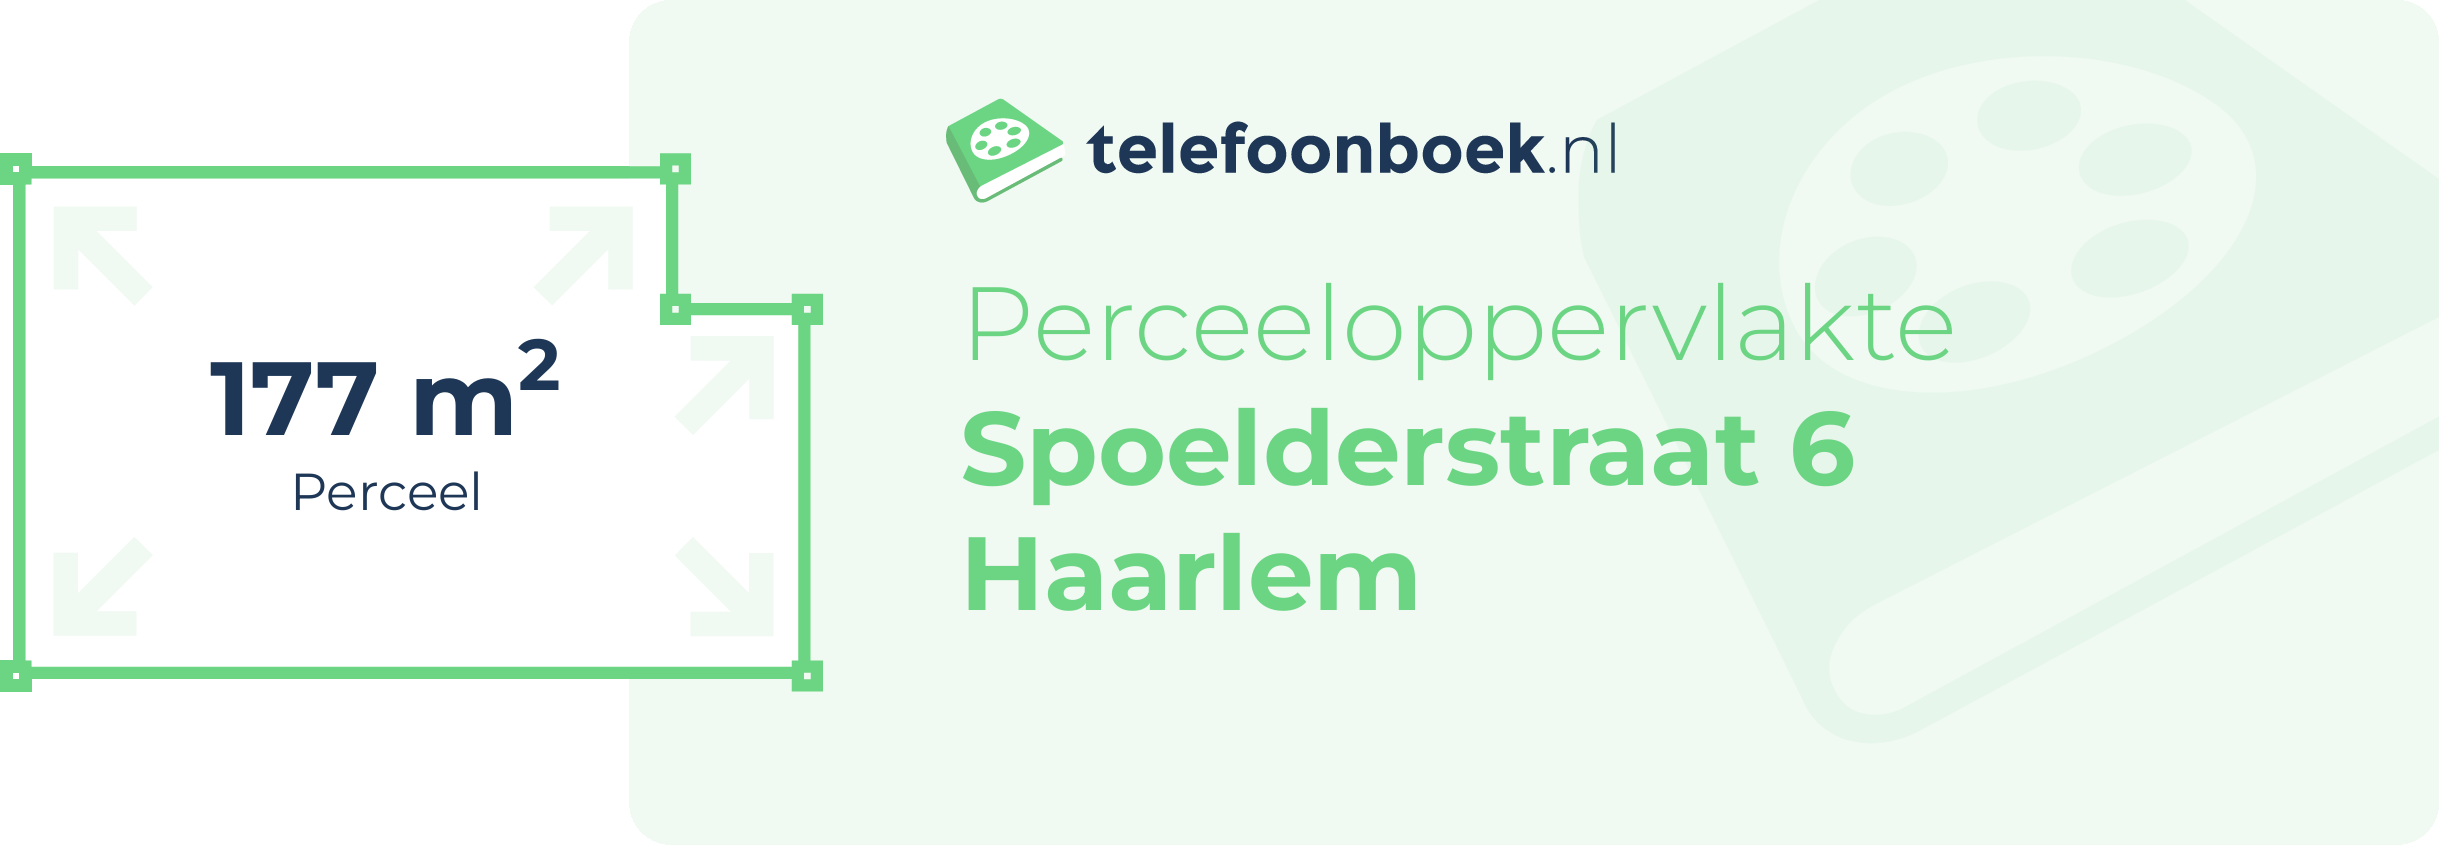 Perceeloppervlakte Spoelderstraat 6 Haarlem